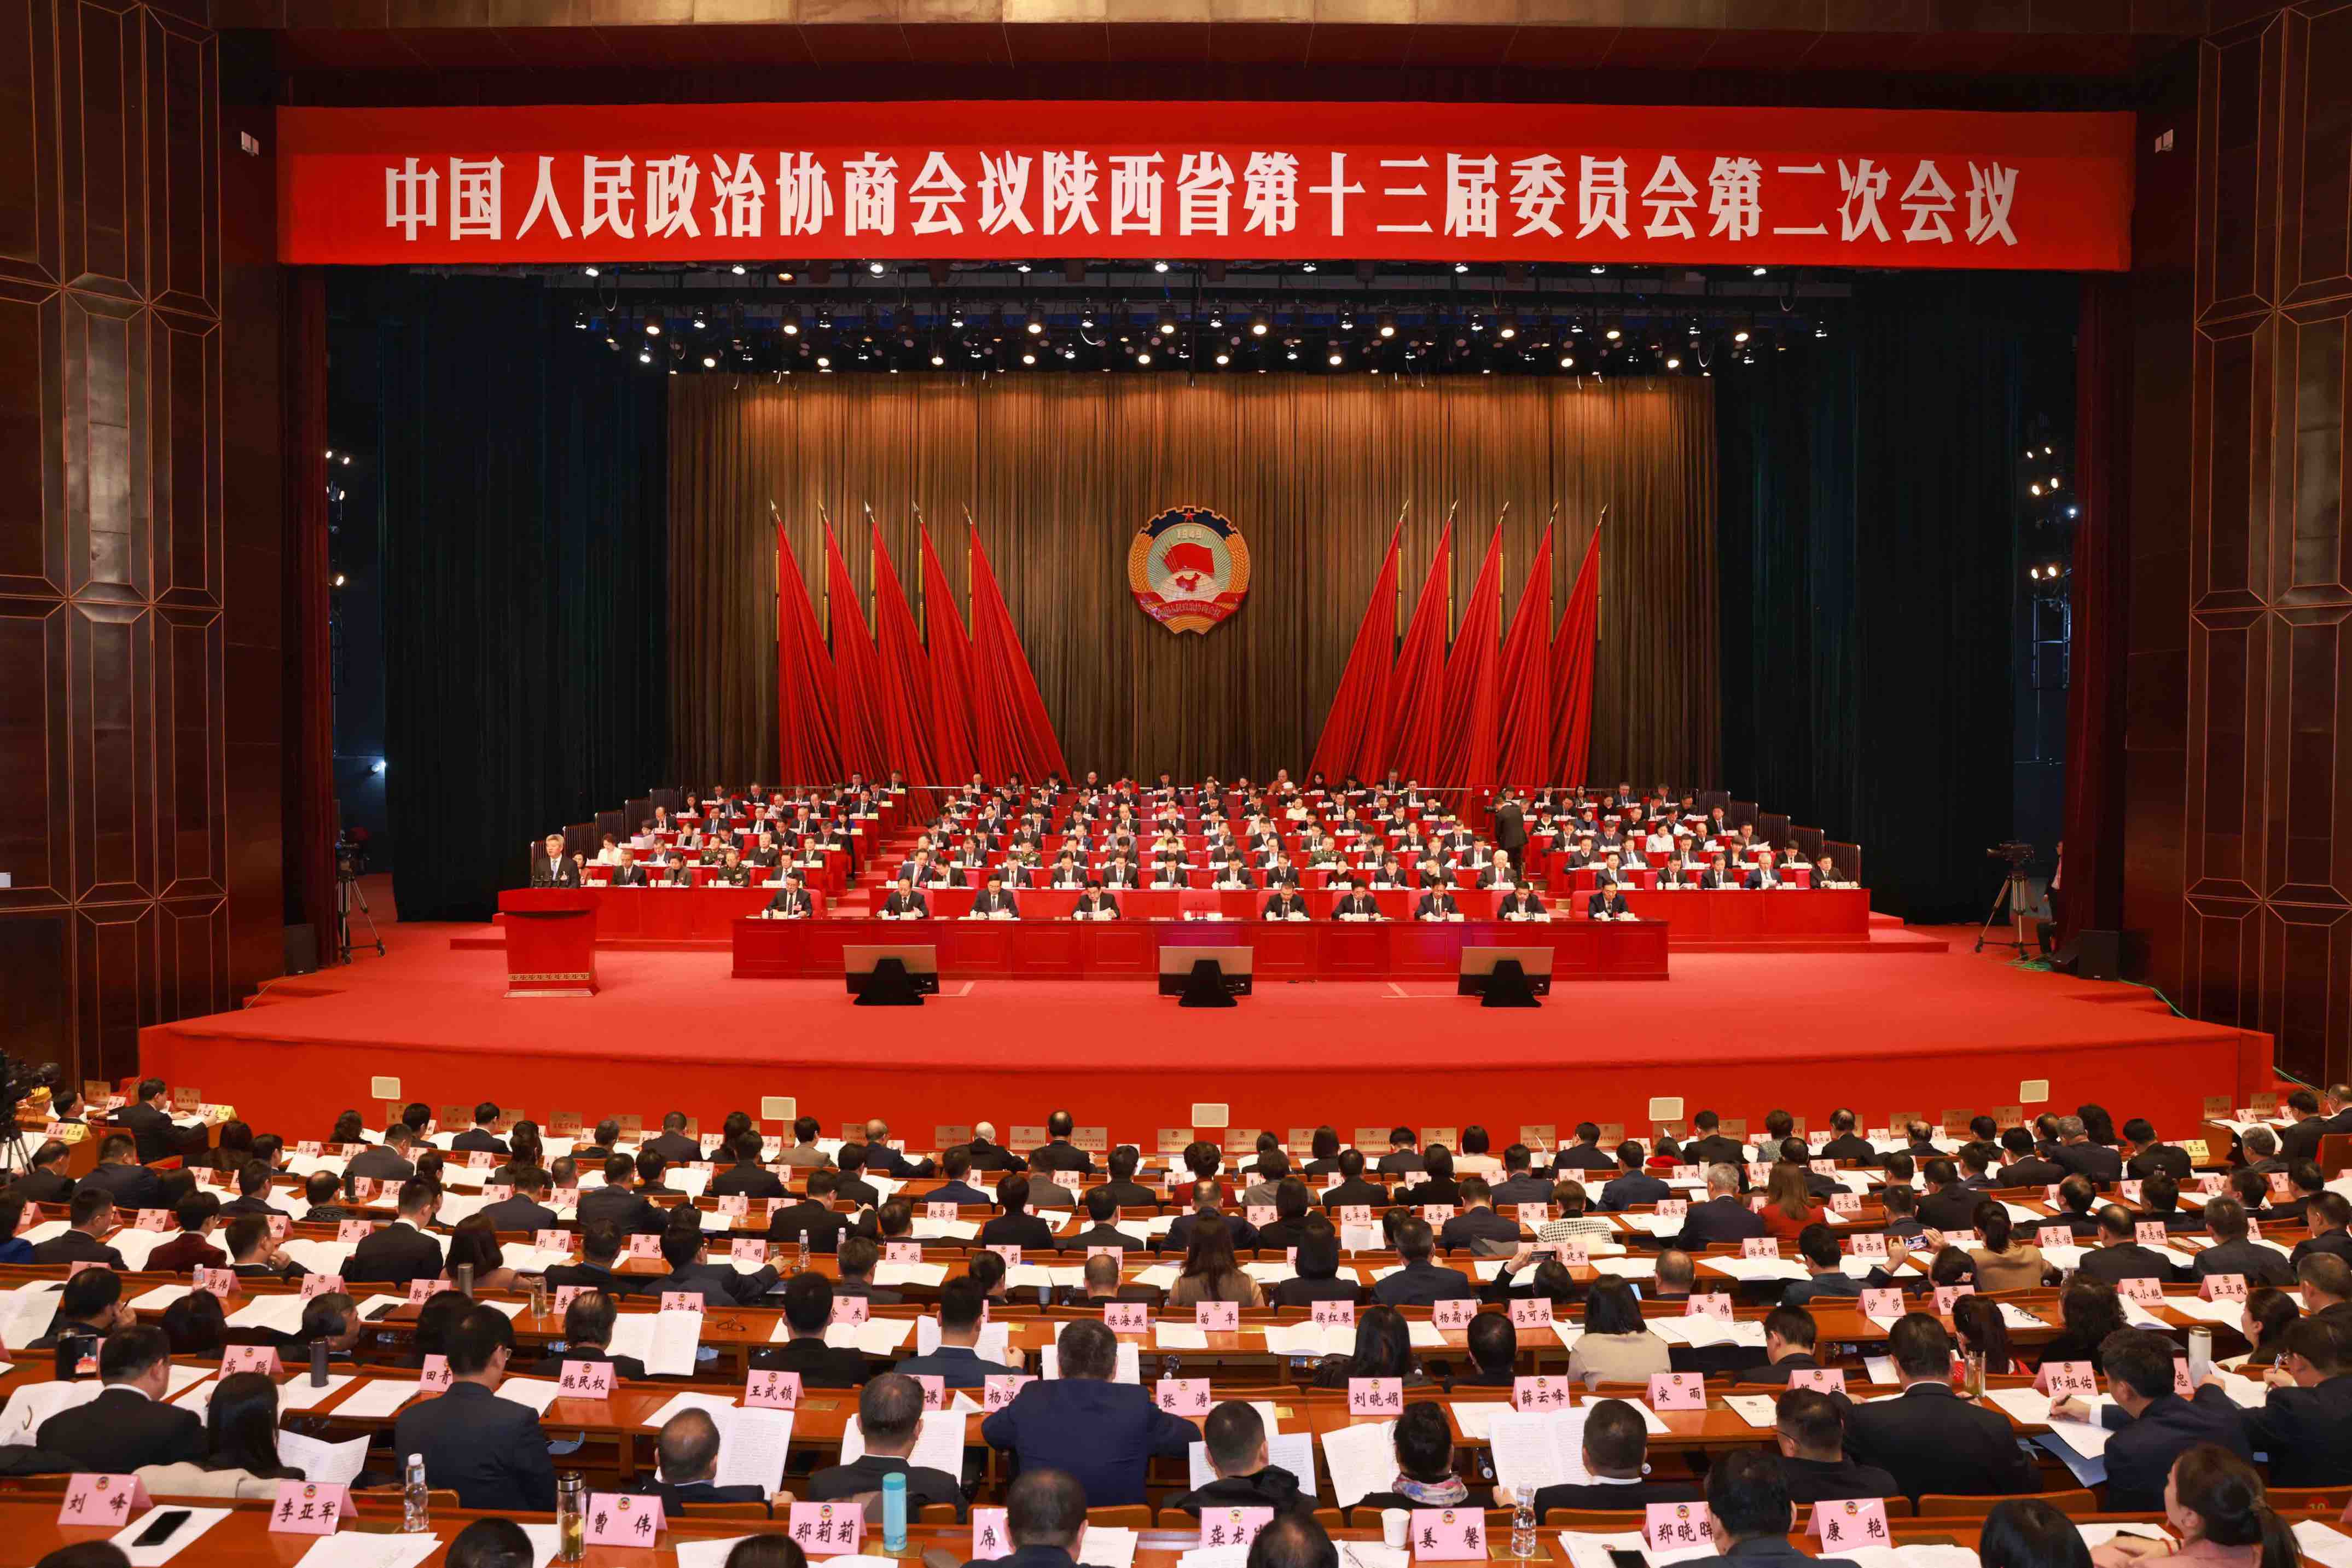 现场 | 政协陕西省第十三届委员会第二次会议今日开幕